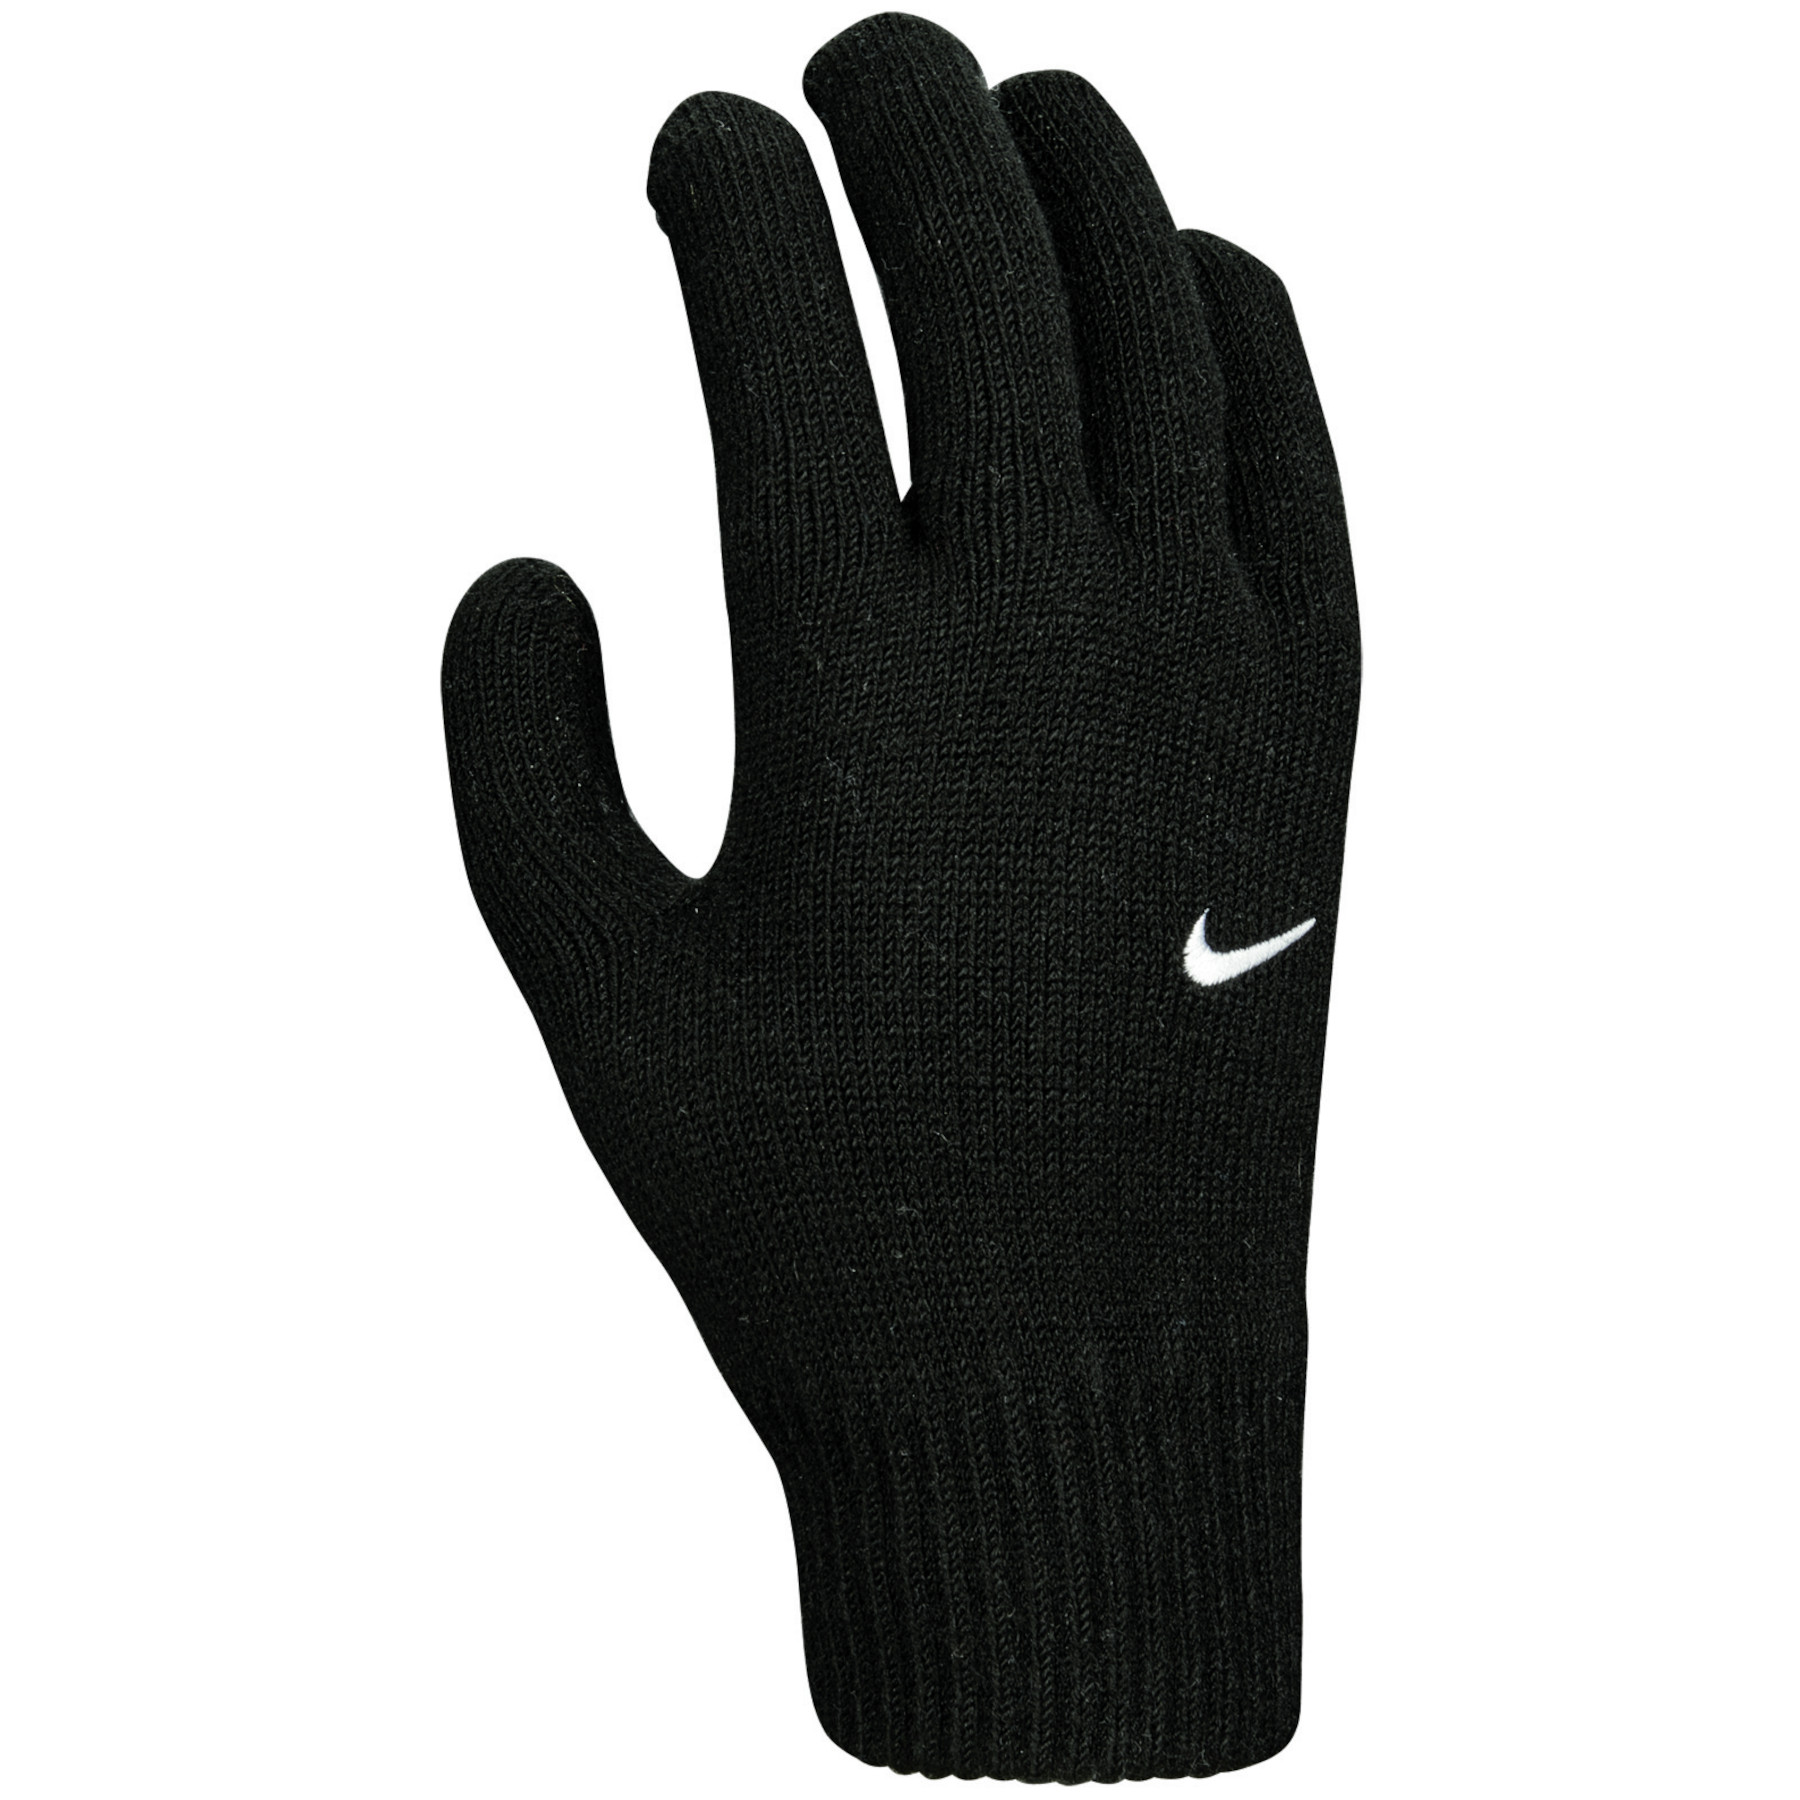 Produktbild von Nike Swoosh Knit Jugendliche Laufhandschuhe 2.0 - black/white 010